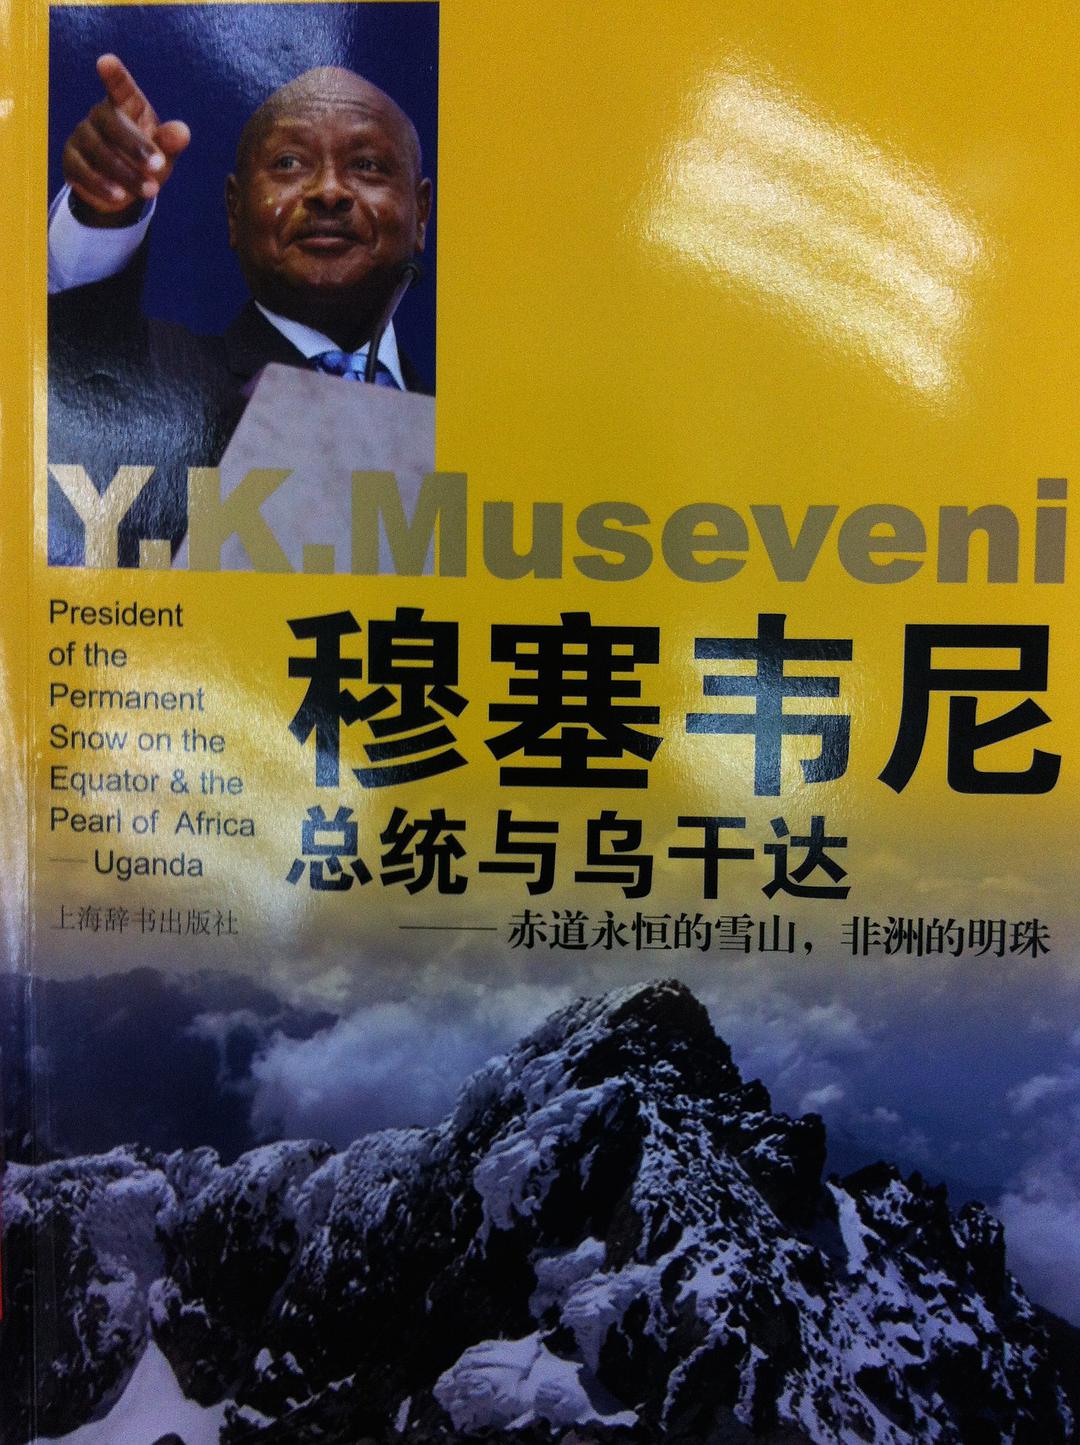 穆塞韋尼總統的中文傳記